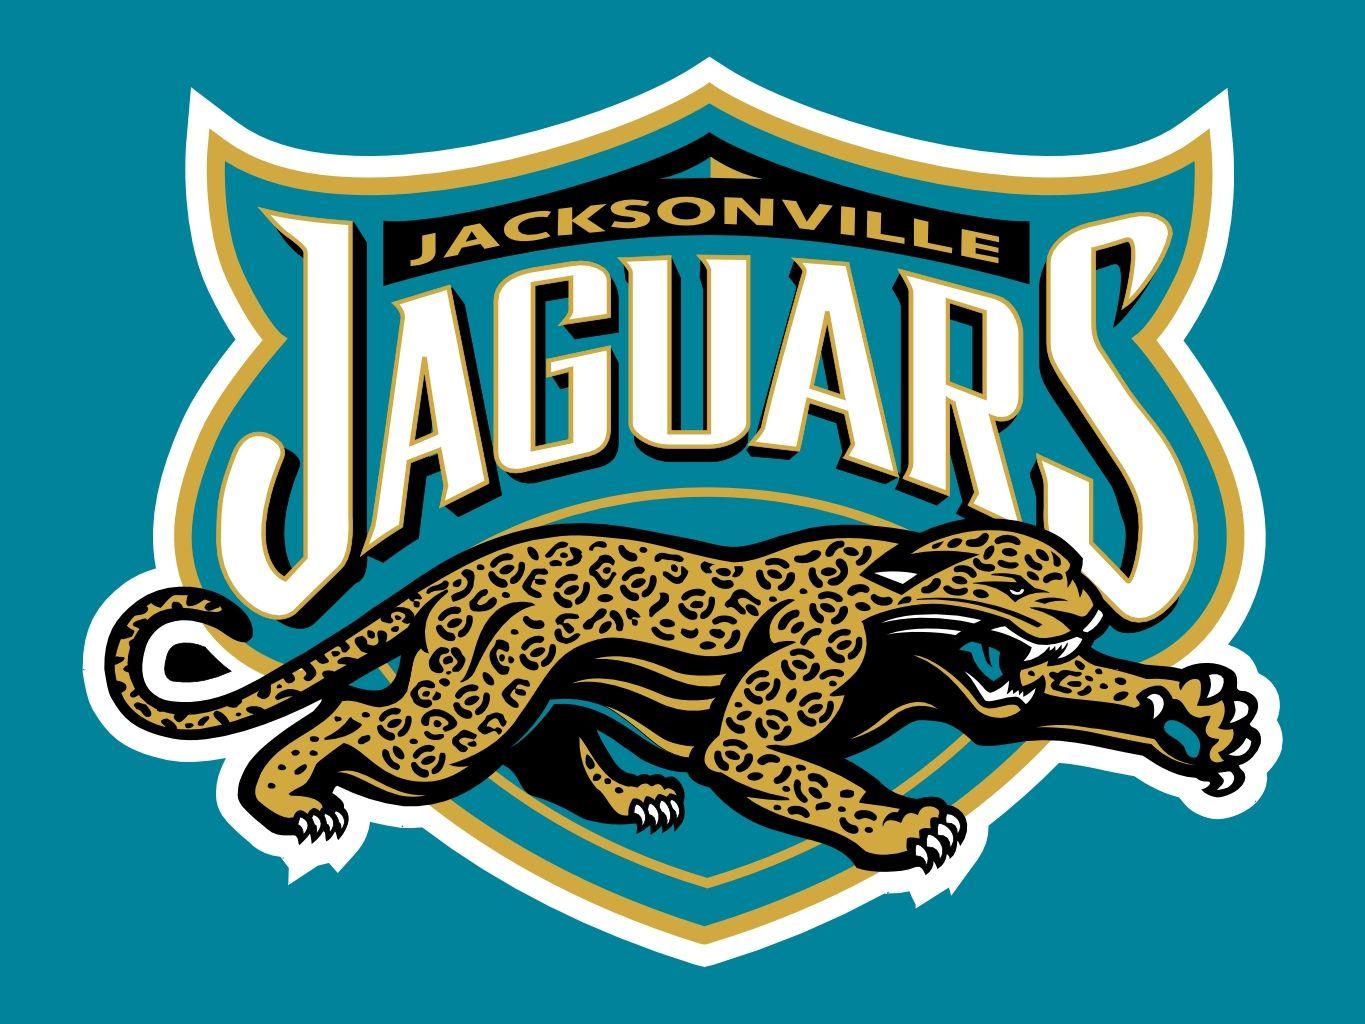 Funny NFL Jaguars Logo - jacksonville jaguars logos - Yahoo Image Search Results | NFL / NBA ...